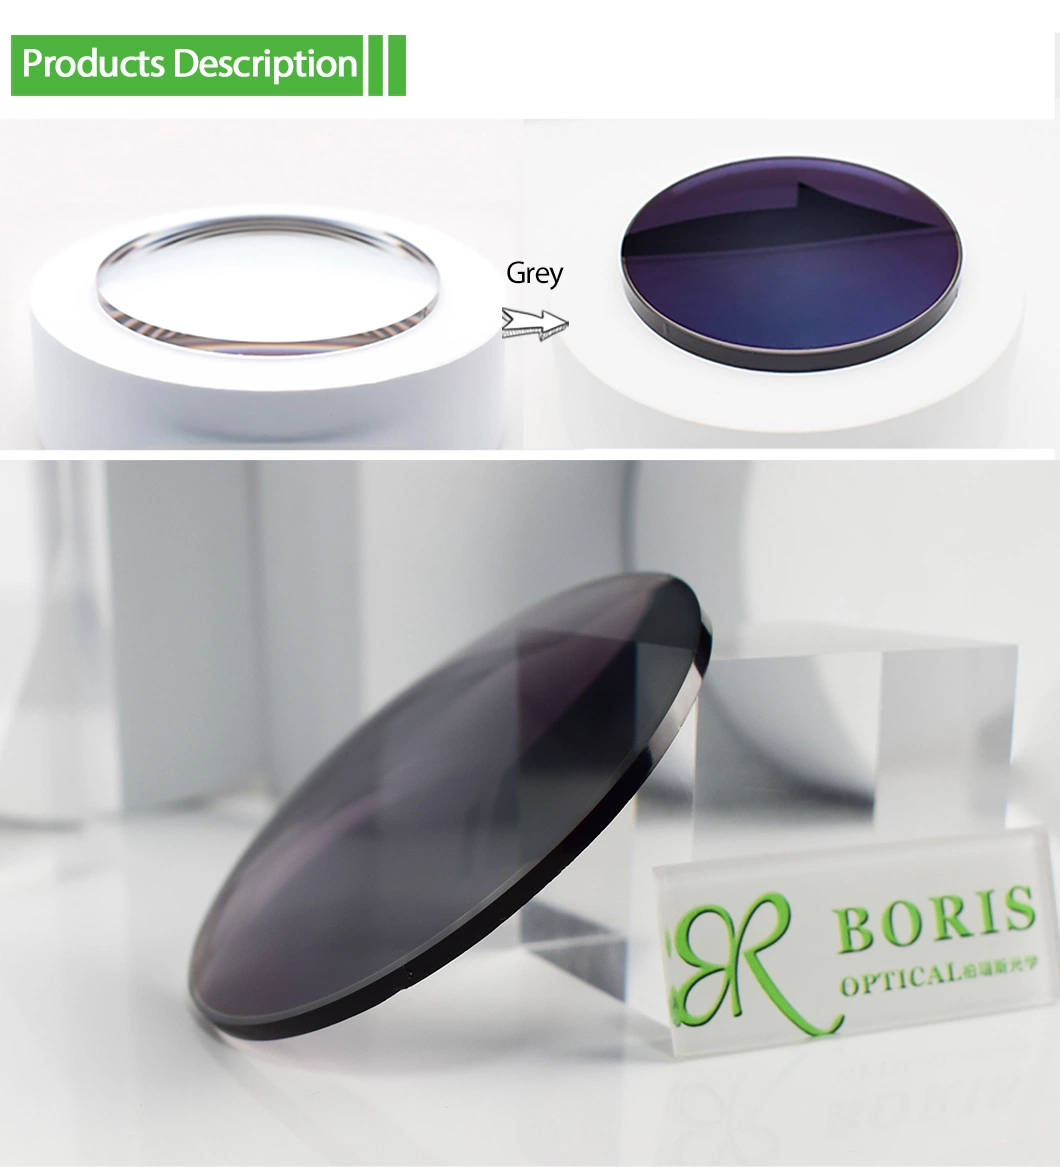 Spectacles Lens 1.74 Photochromic Grey Hmc Eyeglasses Plastic Lenses